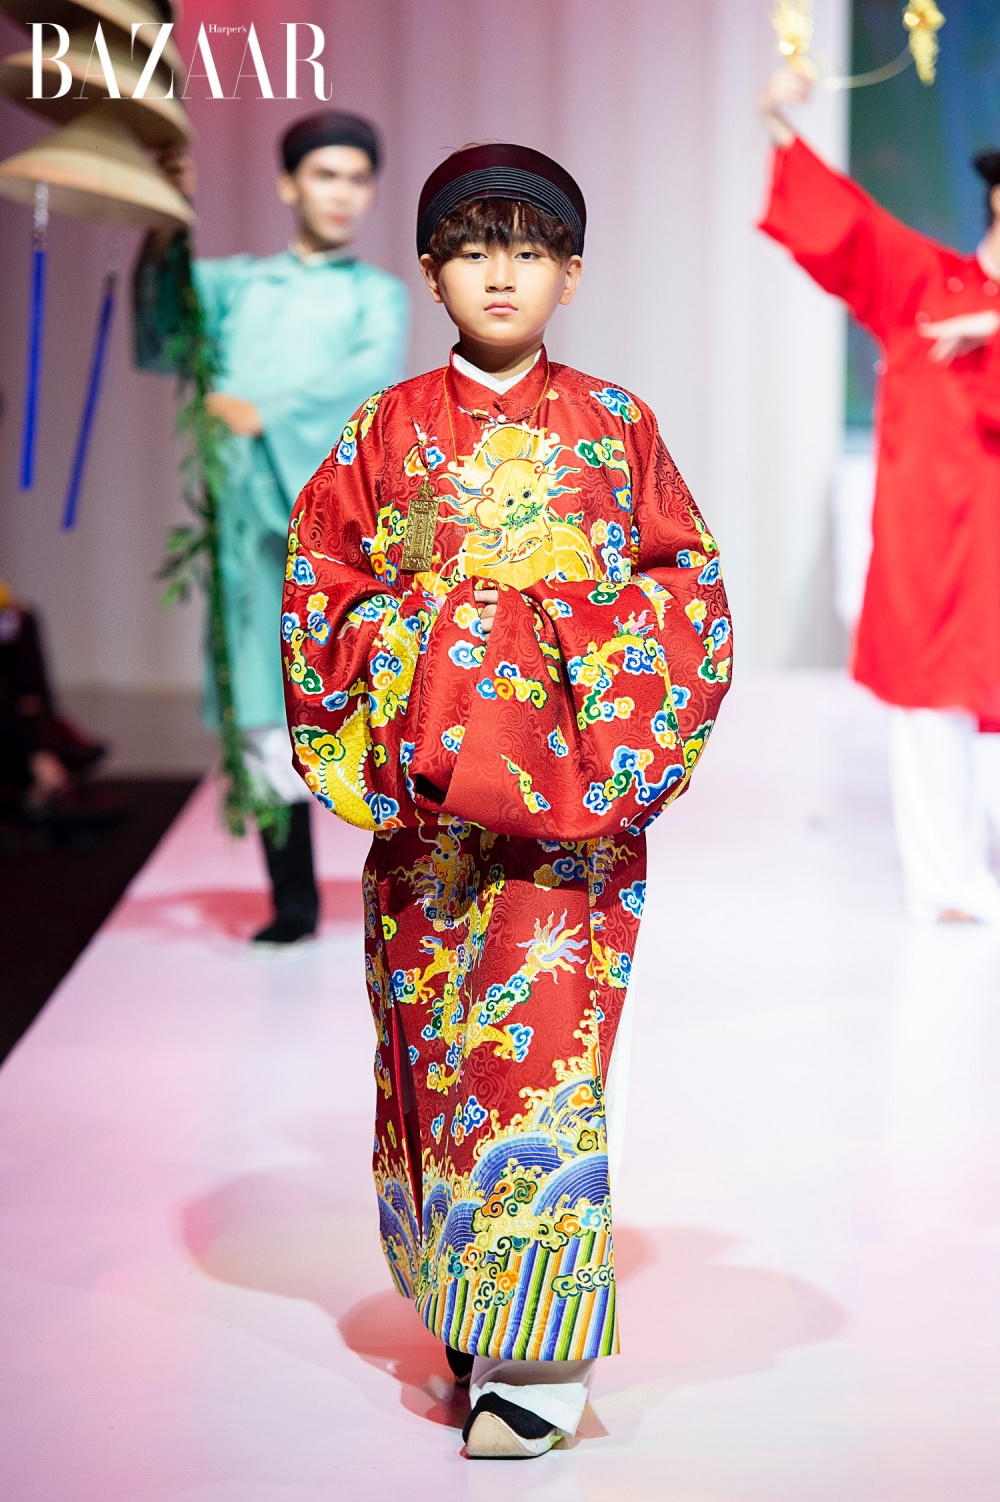 Đảm nhiệm vai trò đi kết show của Kim Trọng, mẫu nhí Vũ Ngọc Trọng Phương khoác lên mình chiếc áo tấc màu đỏ mang đến hình ảnh cung đình xưa.